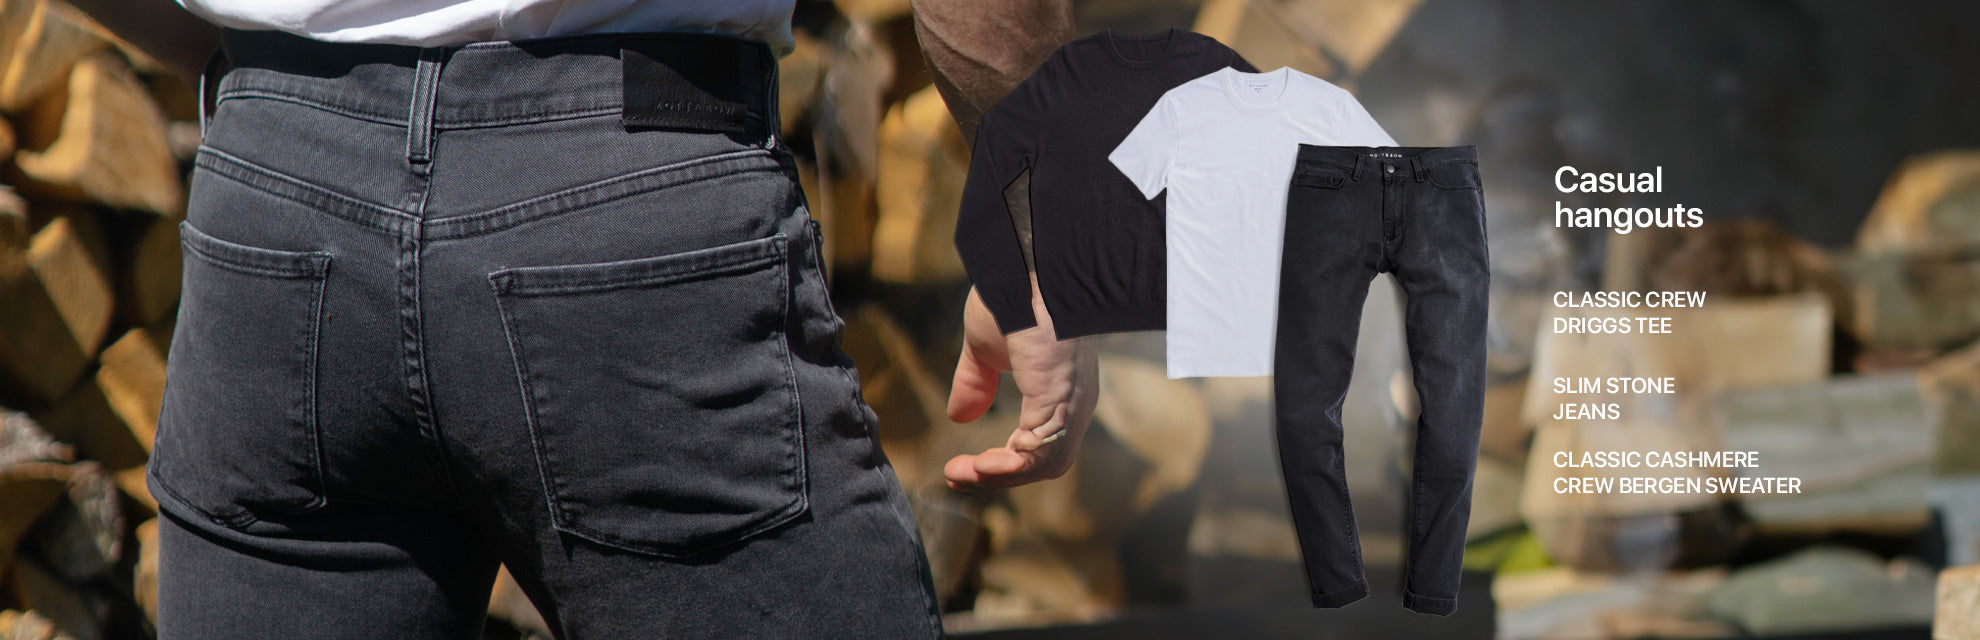 Une tenue pour les sorties décontractées composée d'un pull en cachemire noir, d'un t-shirt blanc et d'un jean gris foncé.